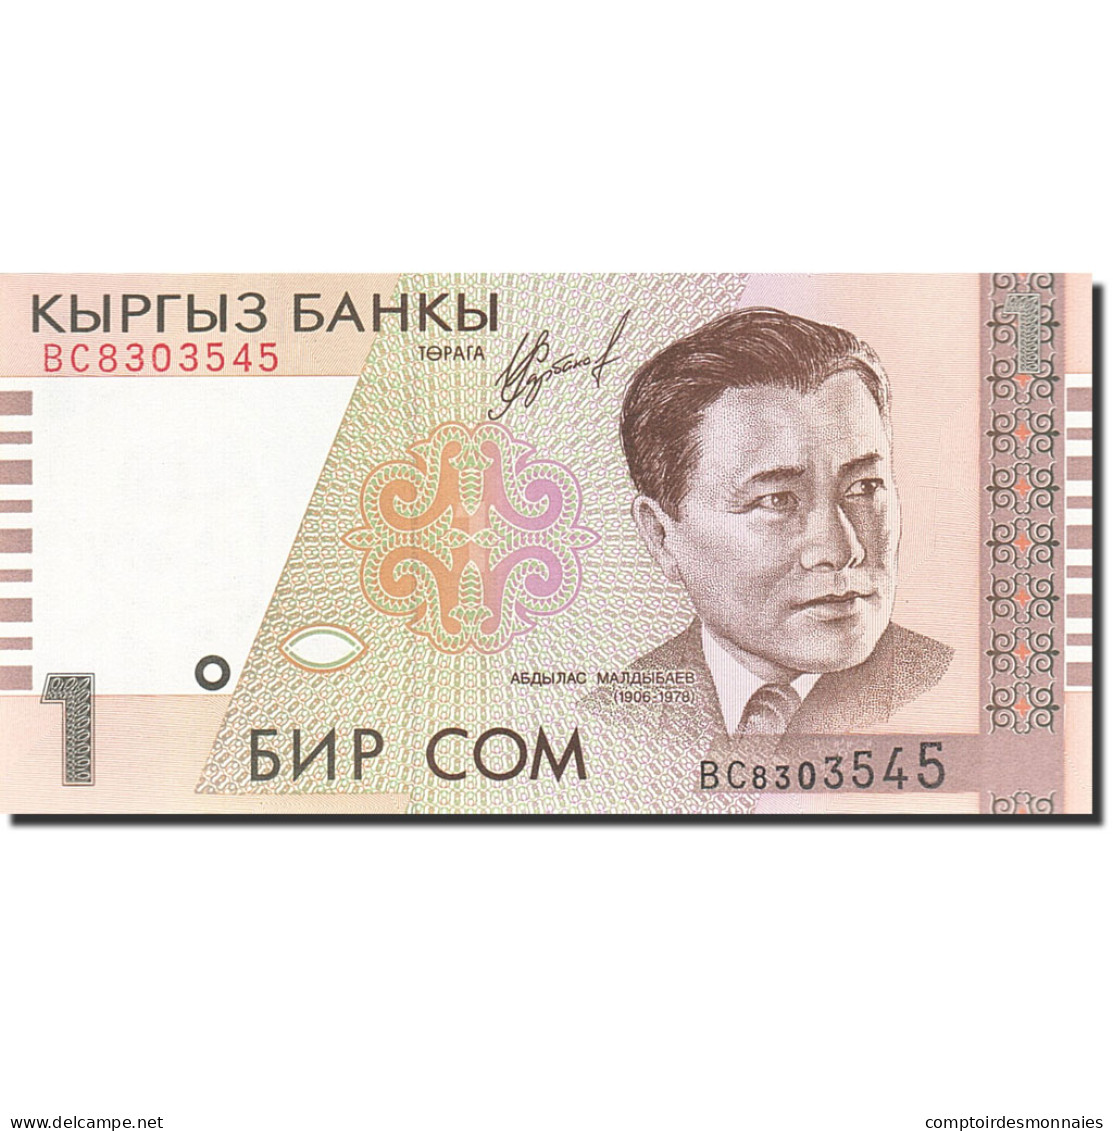 Billet, KYRGYZSTAN, 1 Som, 2000, 1999, KM:15, NEUF - Kirgizïe